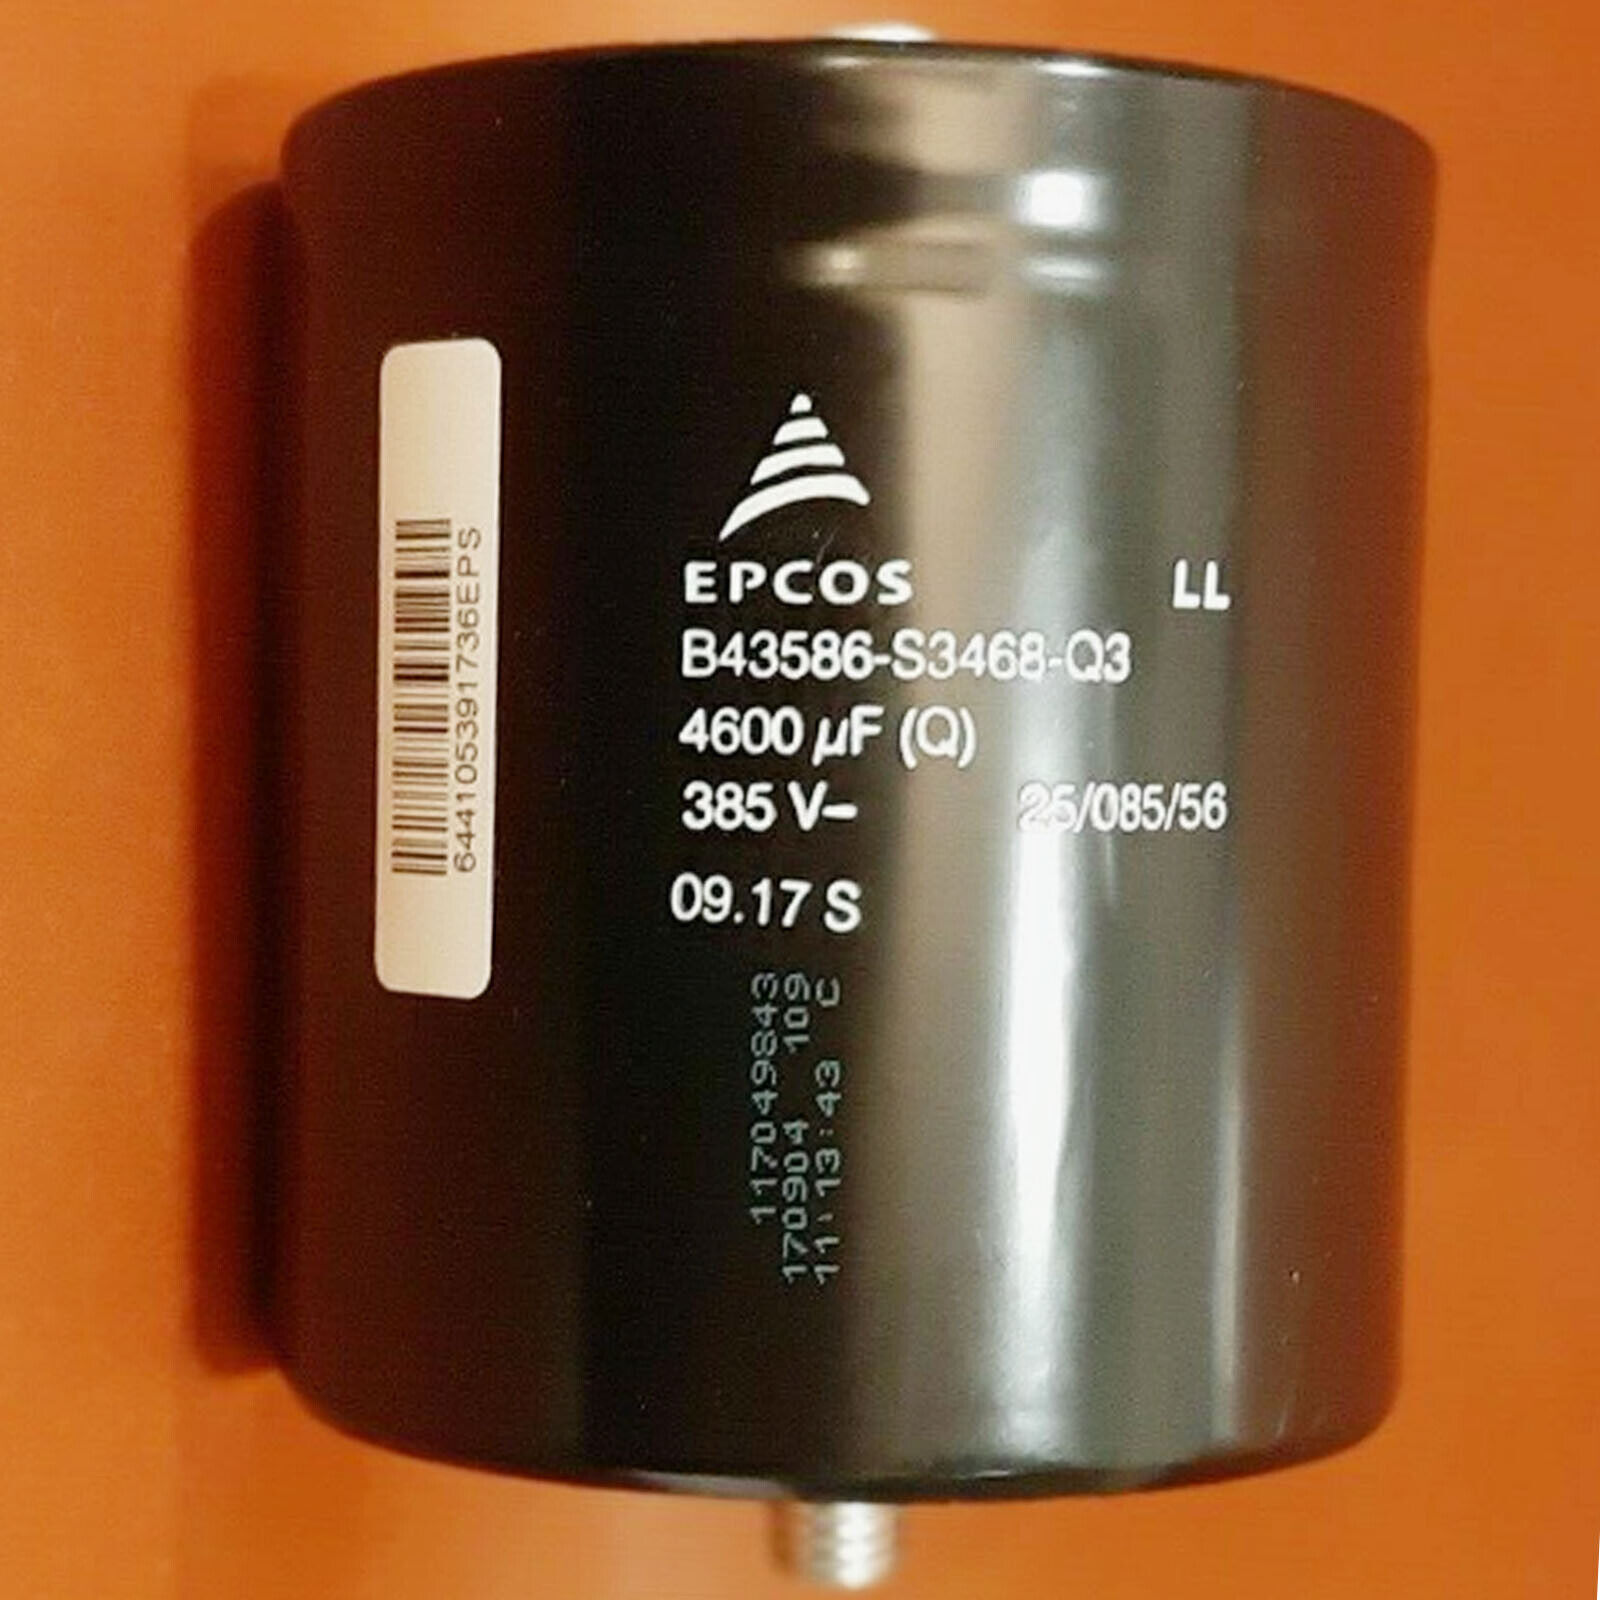 For B43586-S3468-Q3 385V 4600UF capacitor